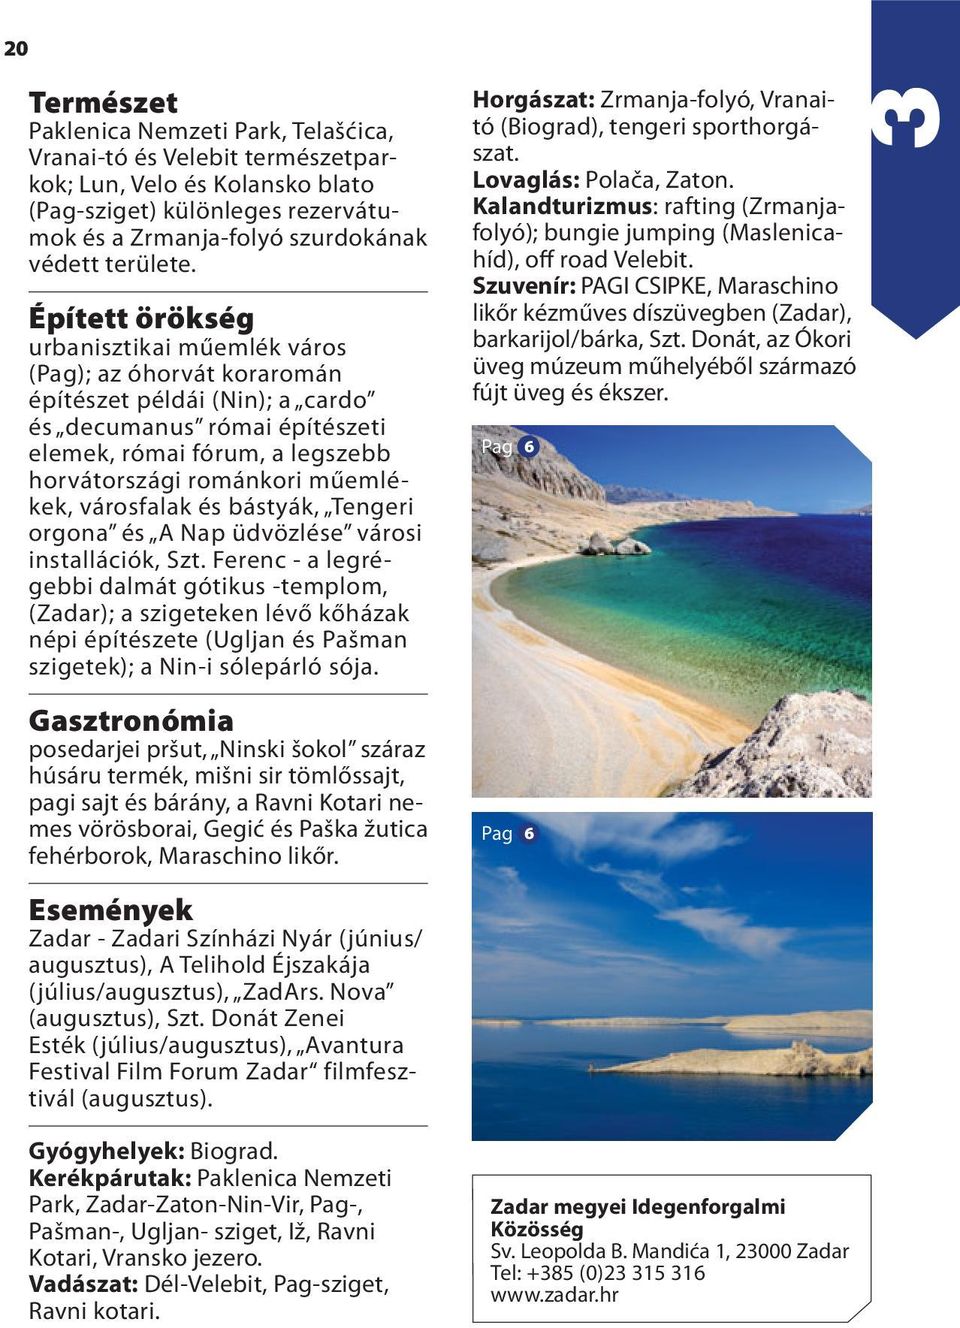 Turisztikai információk Horvátország térképpel - PDF Free Download